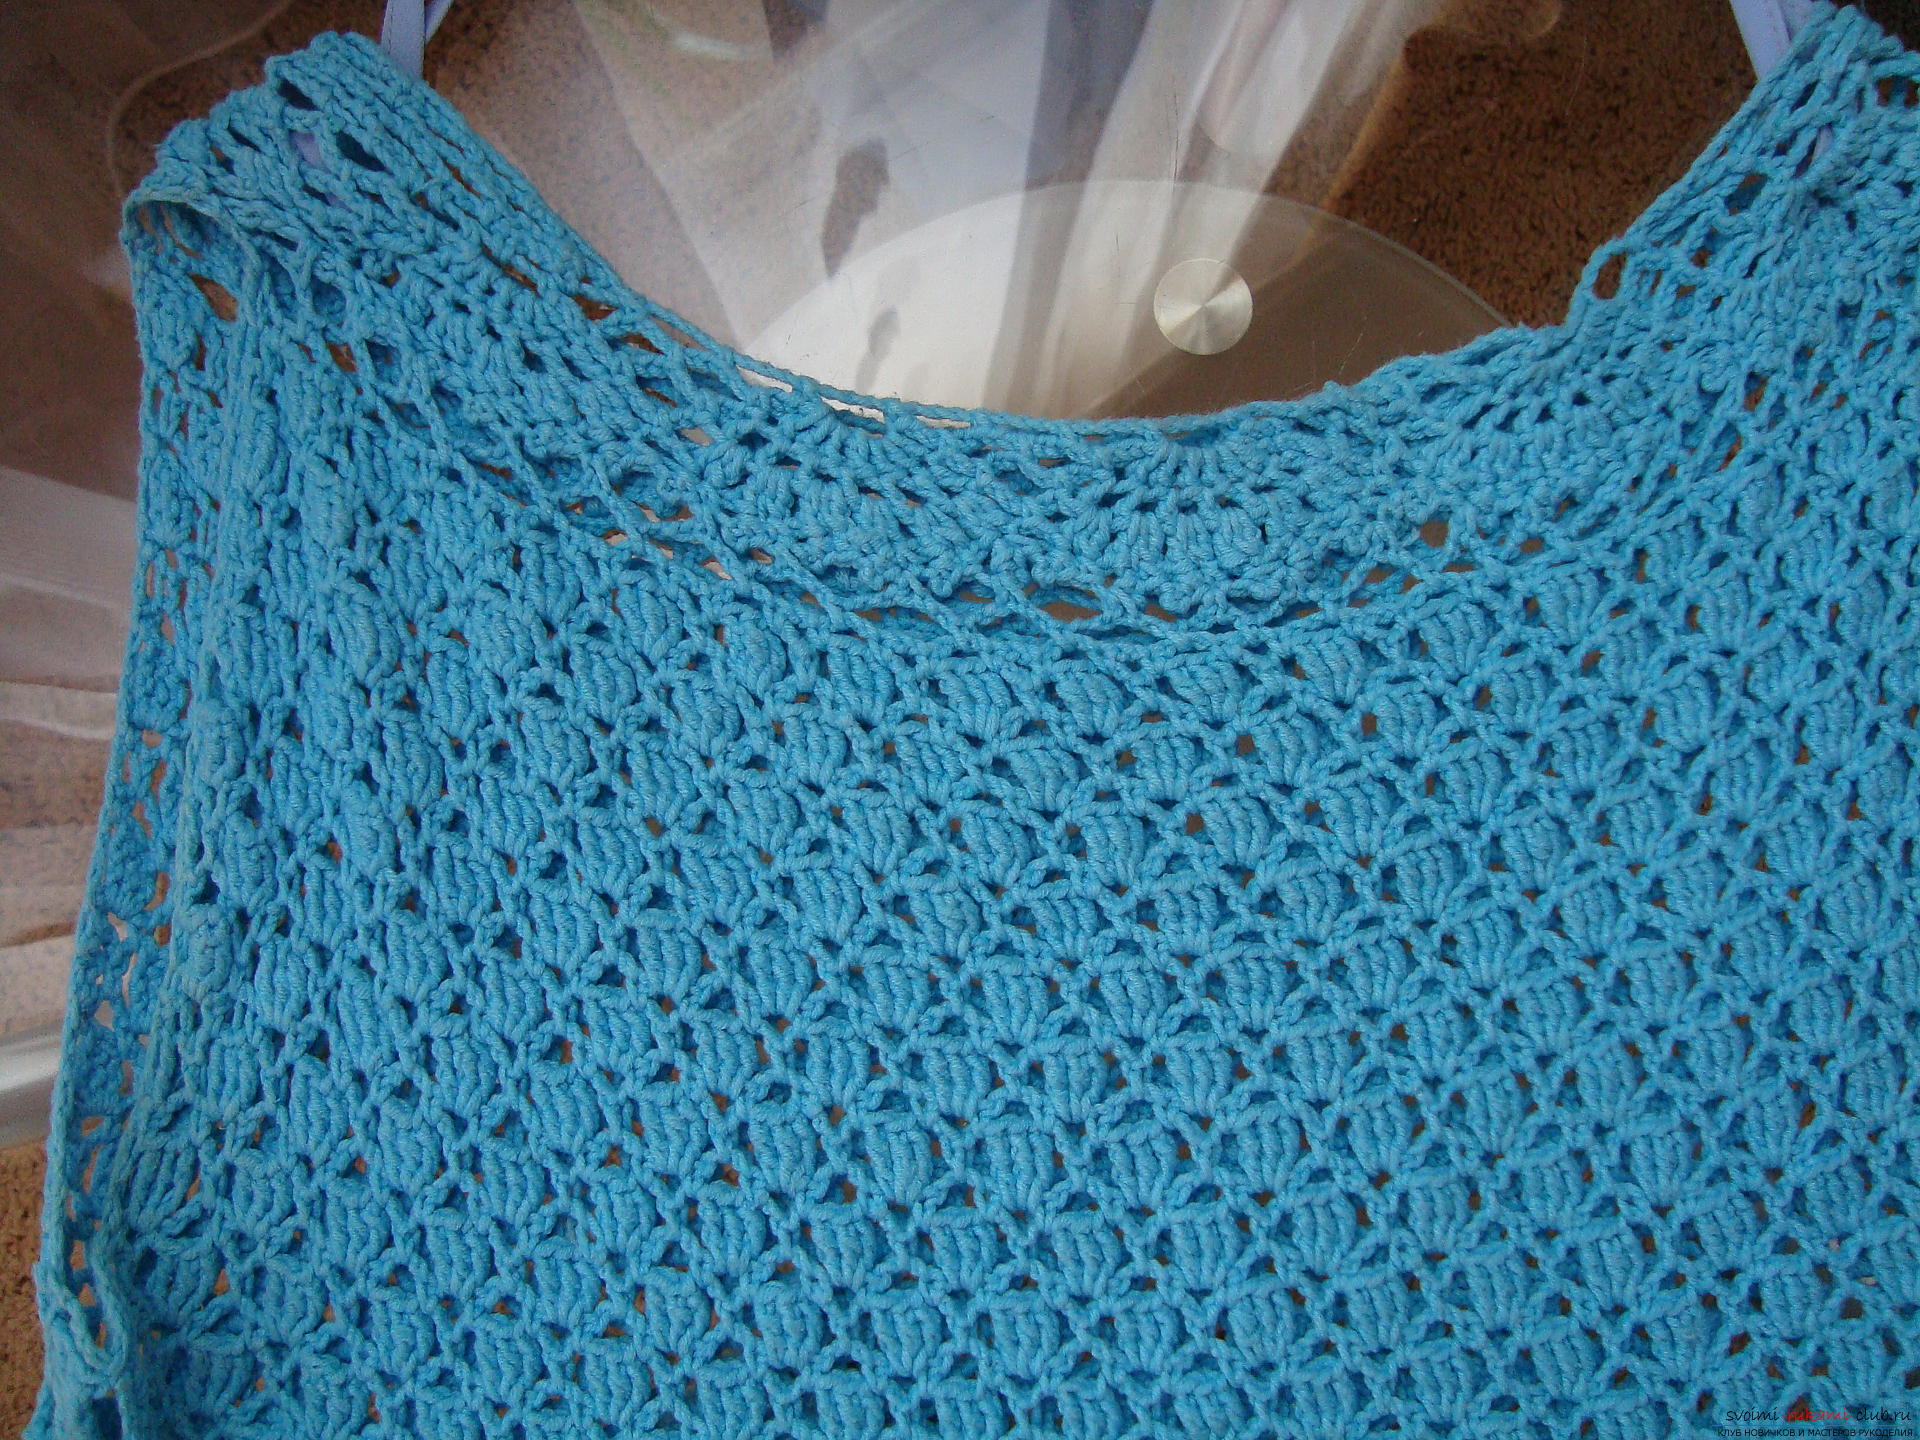 Stapsgewijze instructie over het binden van een turquoise jurk met een haak. Fotonummer 11